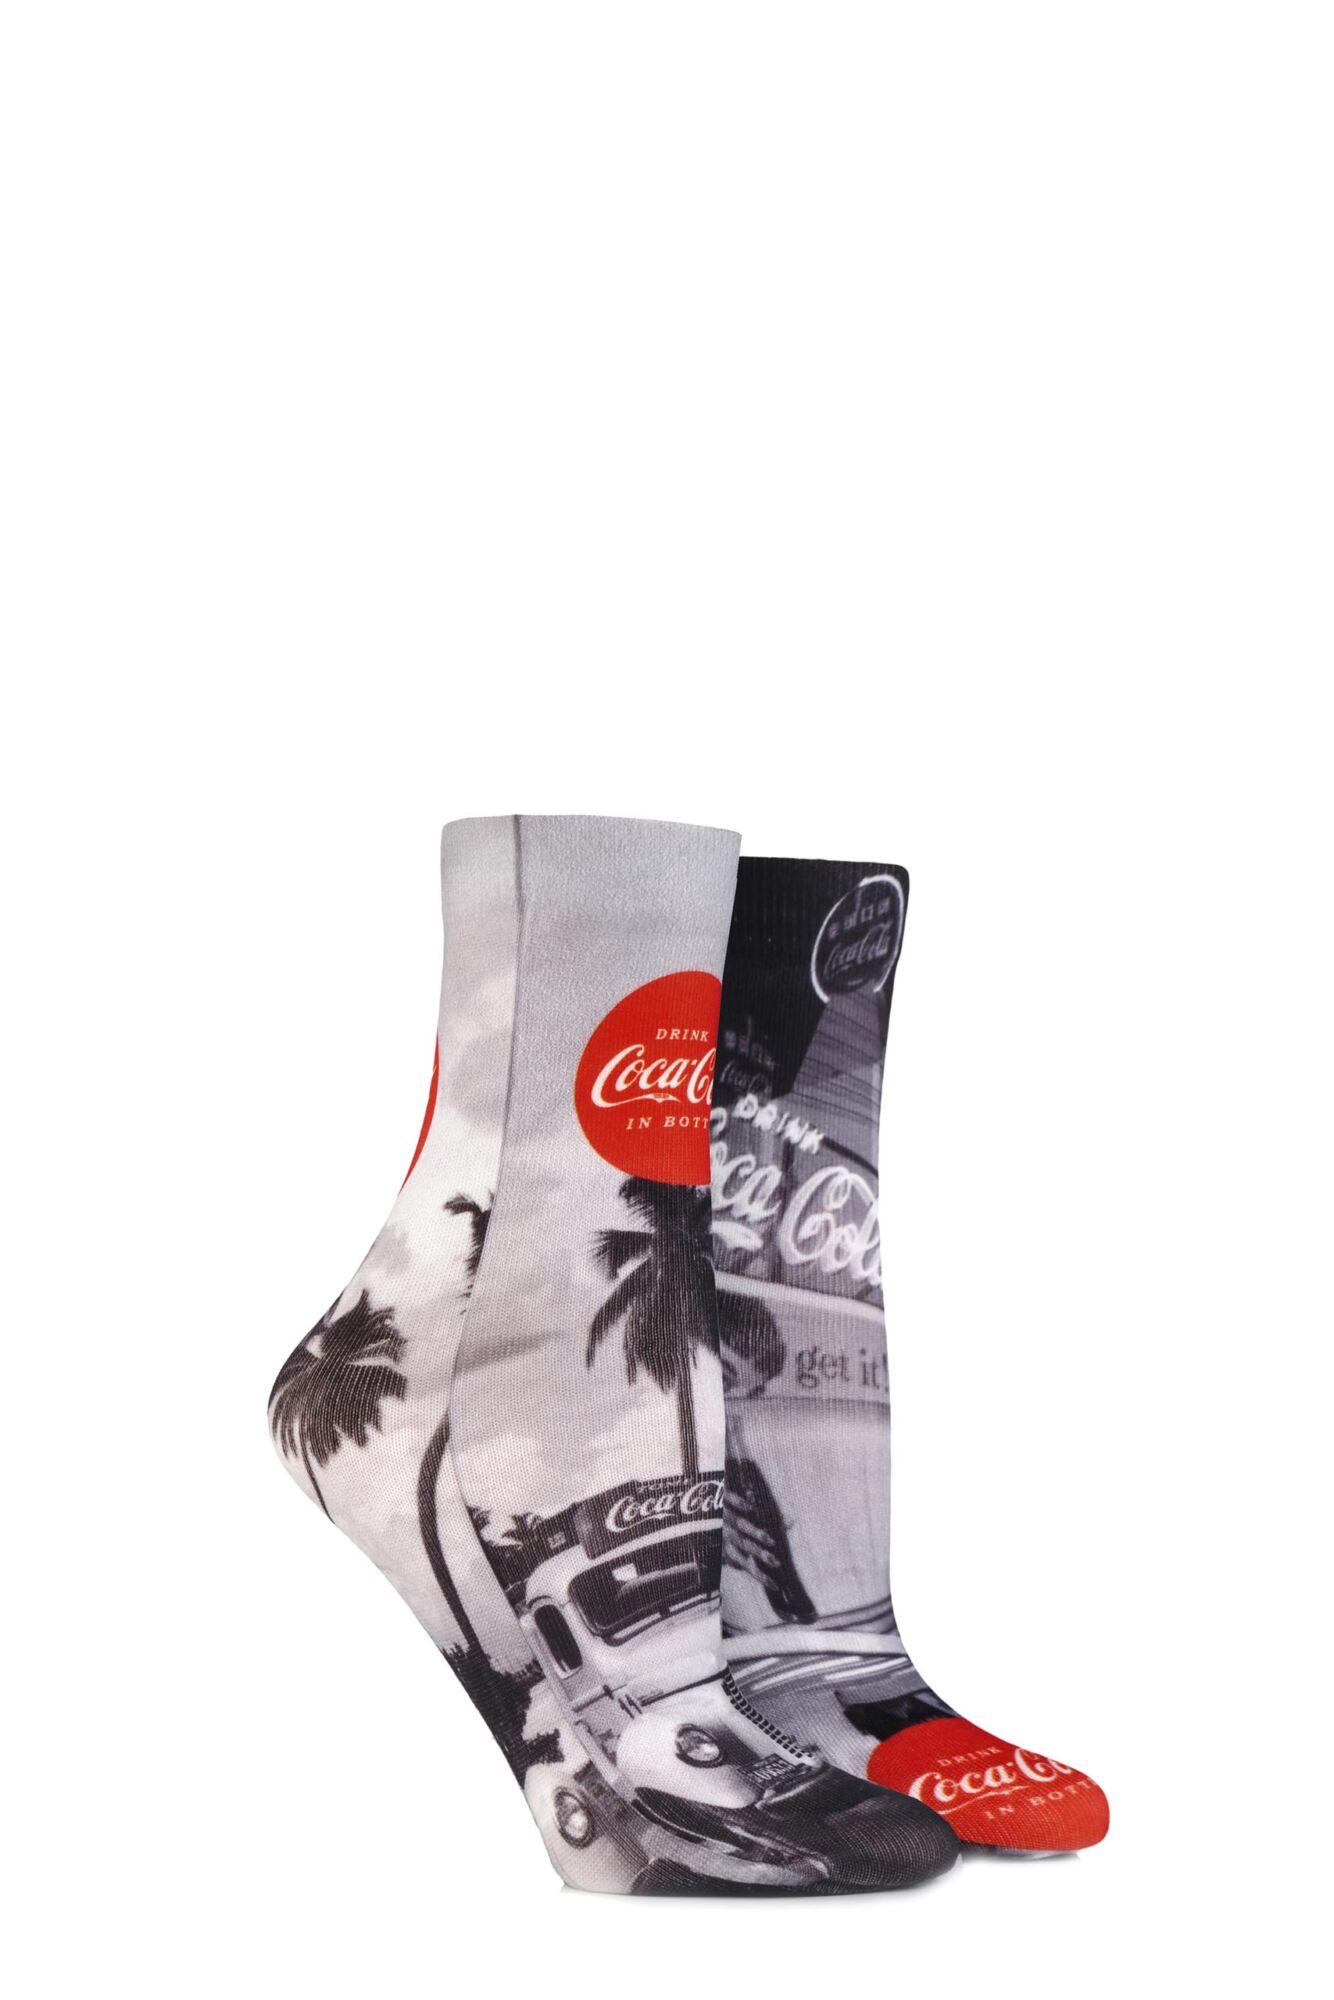 2 Pair Vintage Printed Socks Ladies - Coca Cola